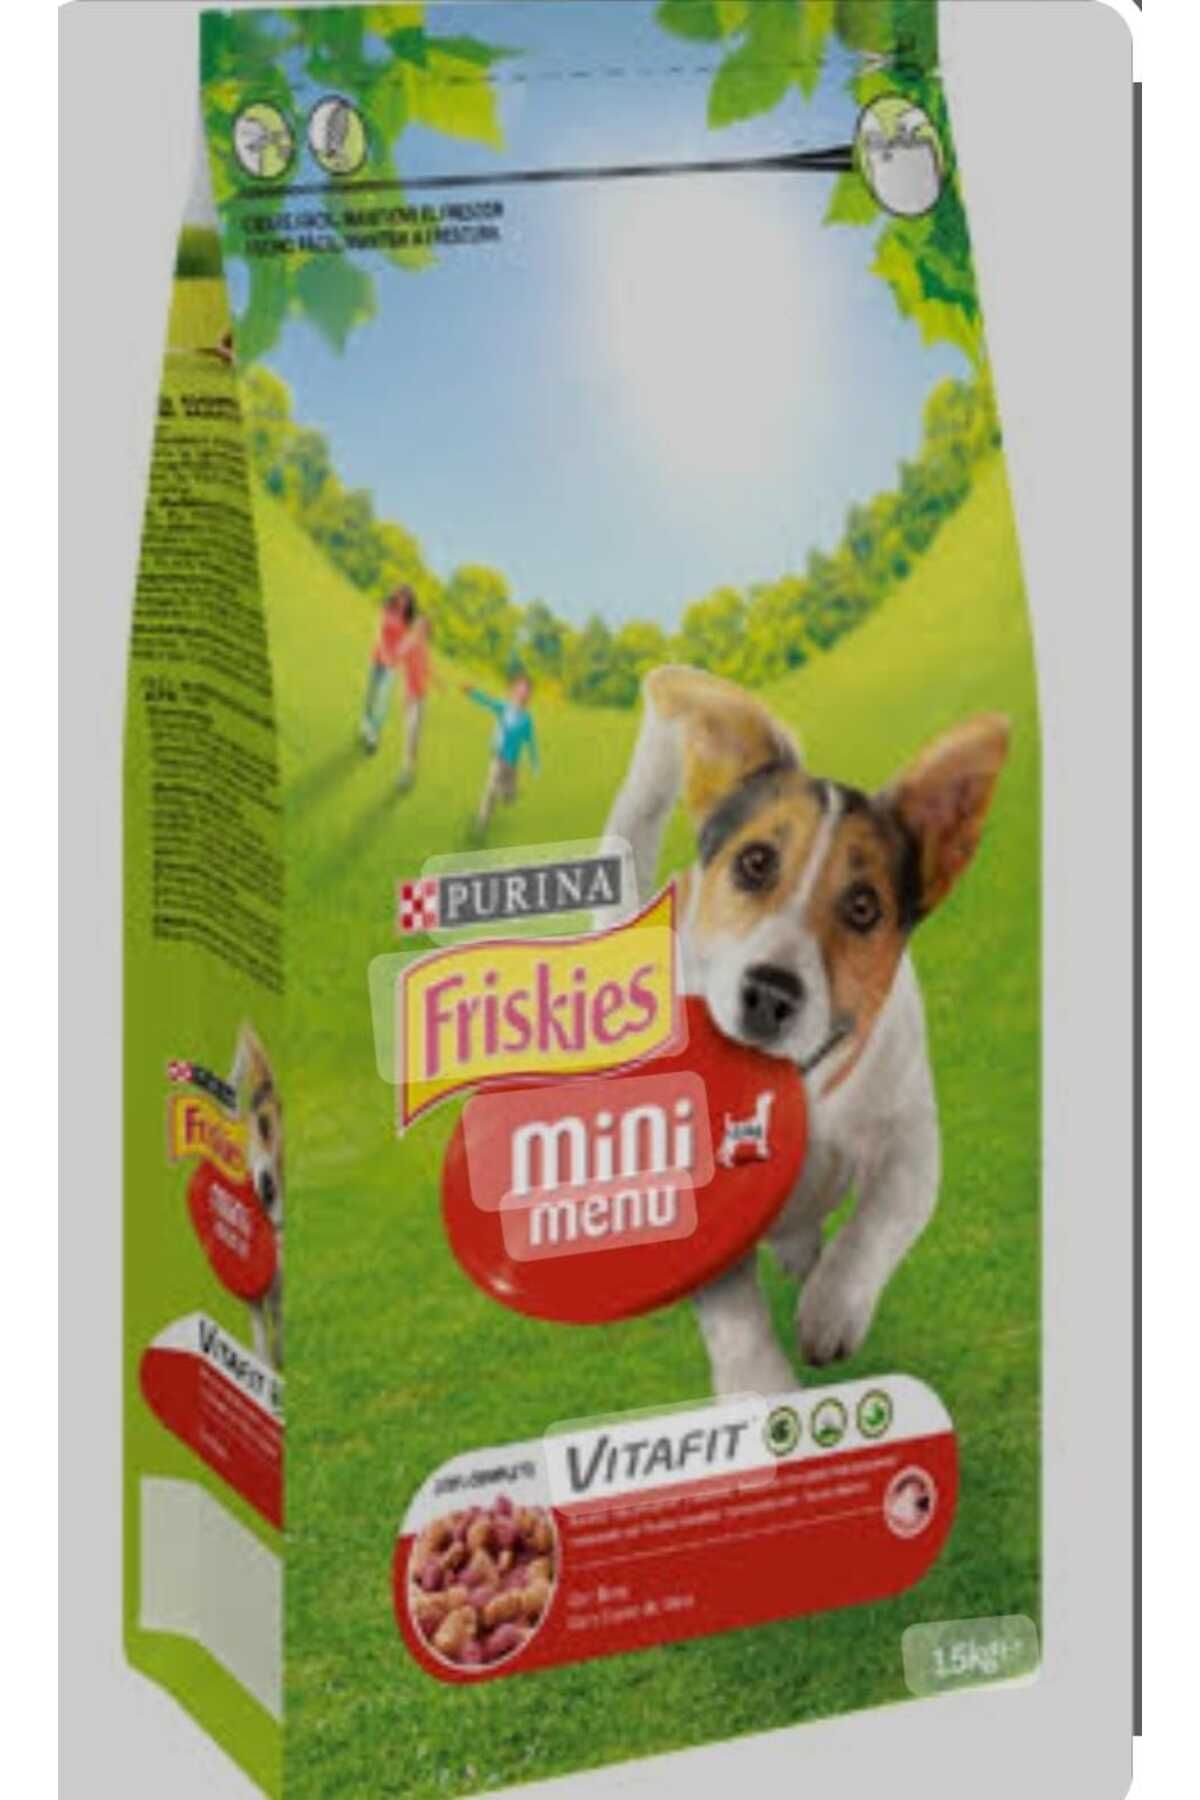 Friskies FriskiesMini Menu Dog Me&veg Maması 1.5 Kg